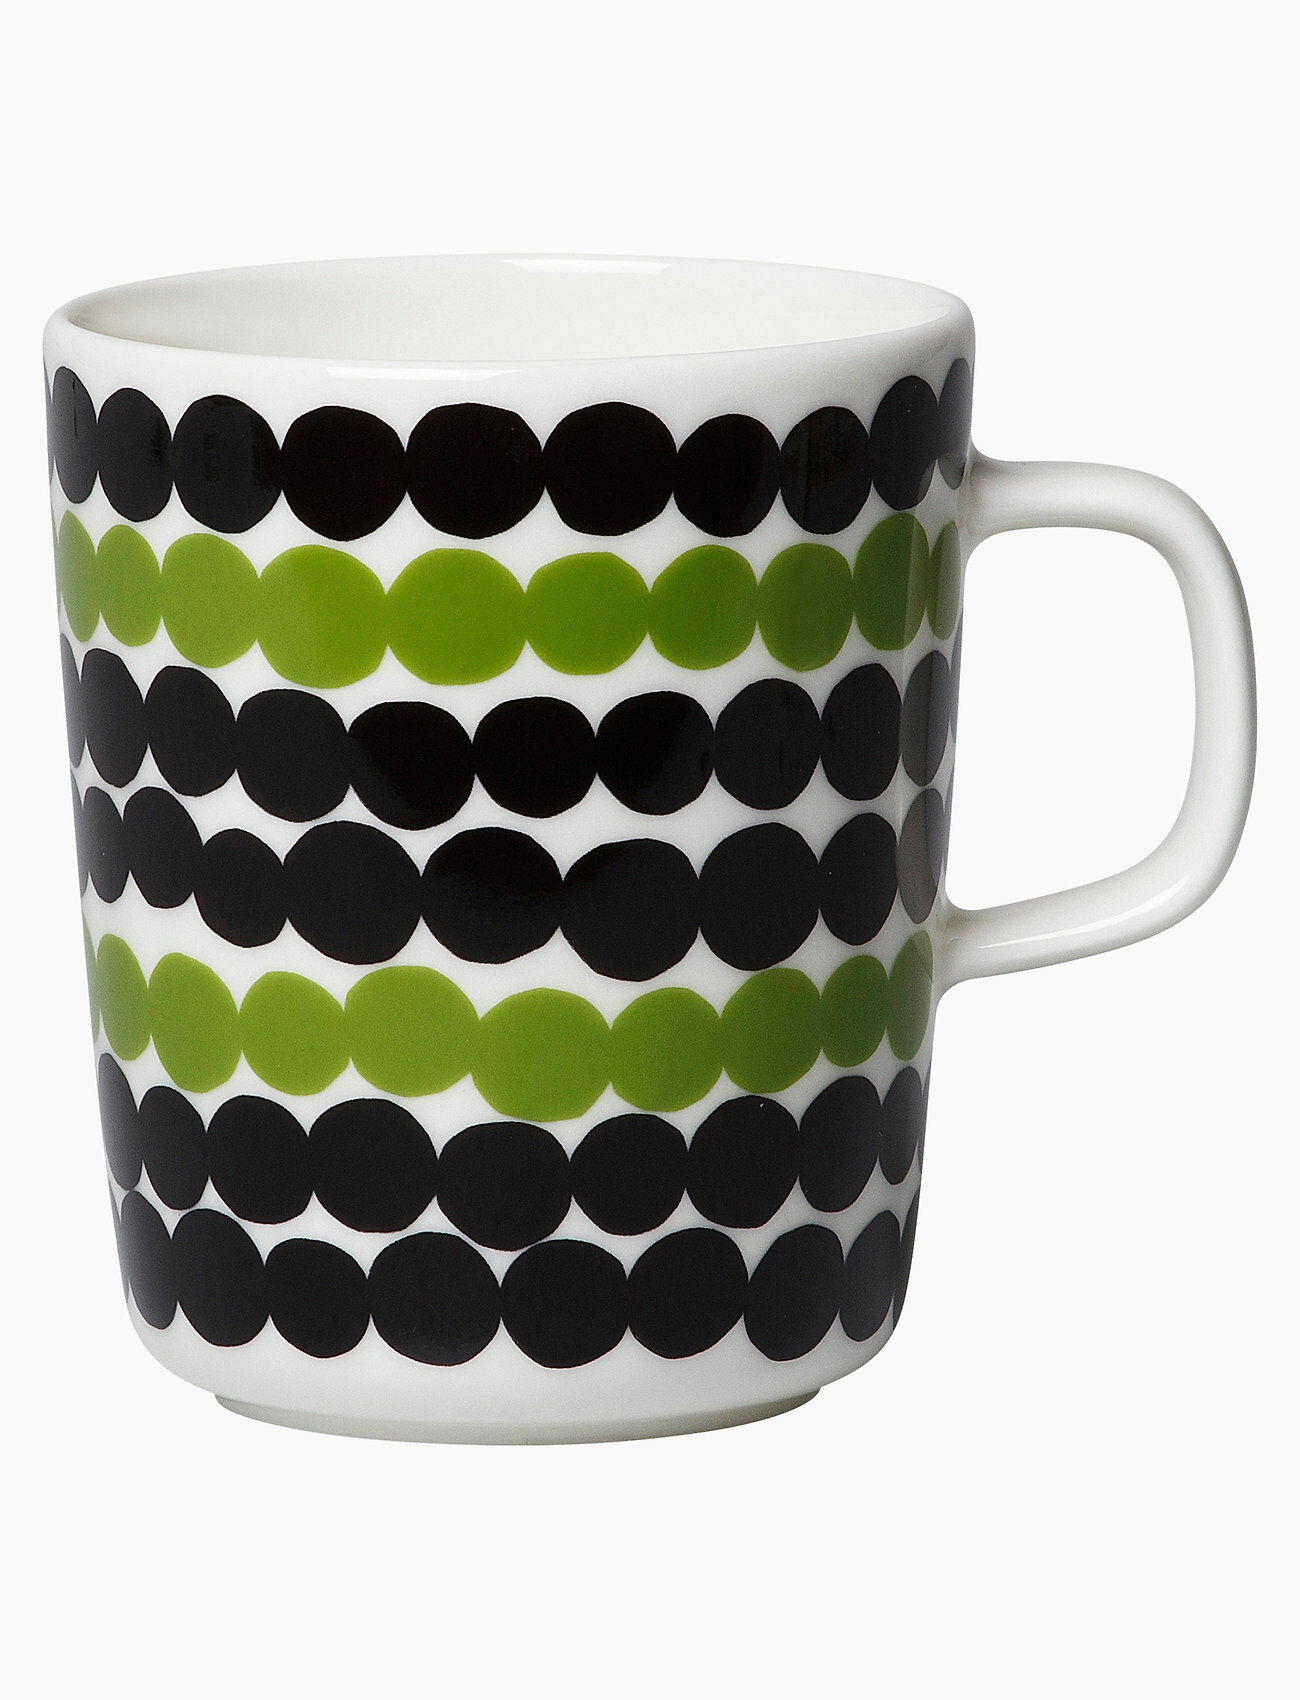 Marimekko Siirtolapuutarha Mug Home Tableware Cups & Mugs Coffee Cups Multi/mønstret Marimekko Home